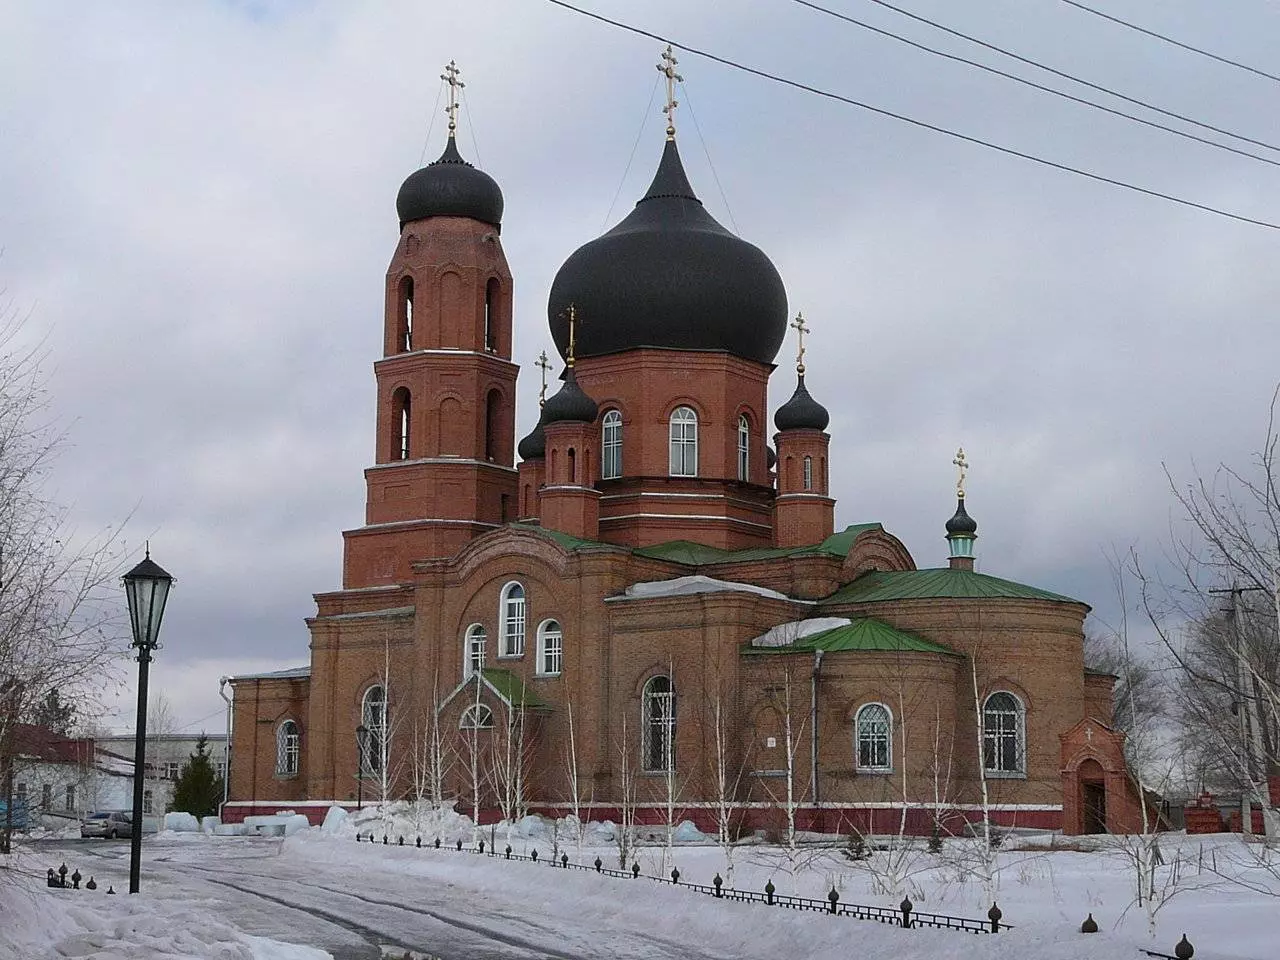 Орск (оренбургская область) ℹ️ достопримечательности с фото, где находится, история города, памятники, площадь, крепость